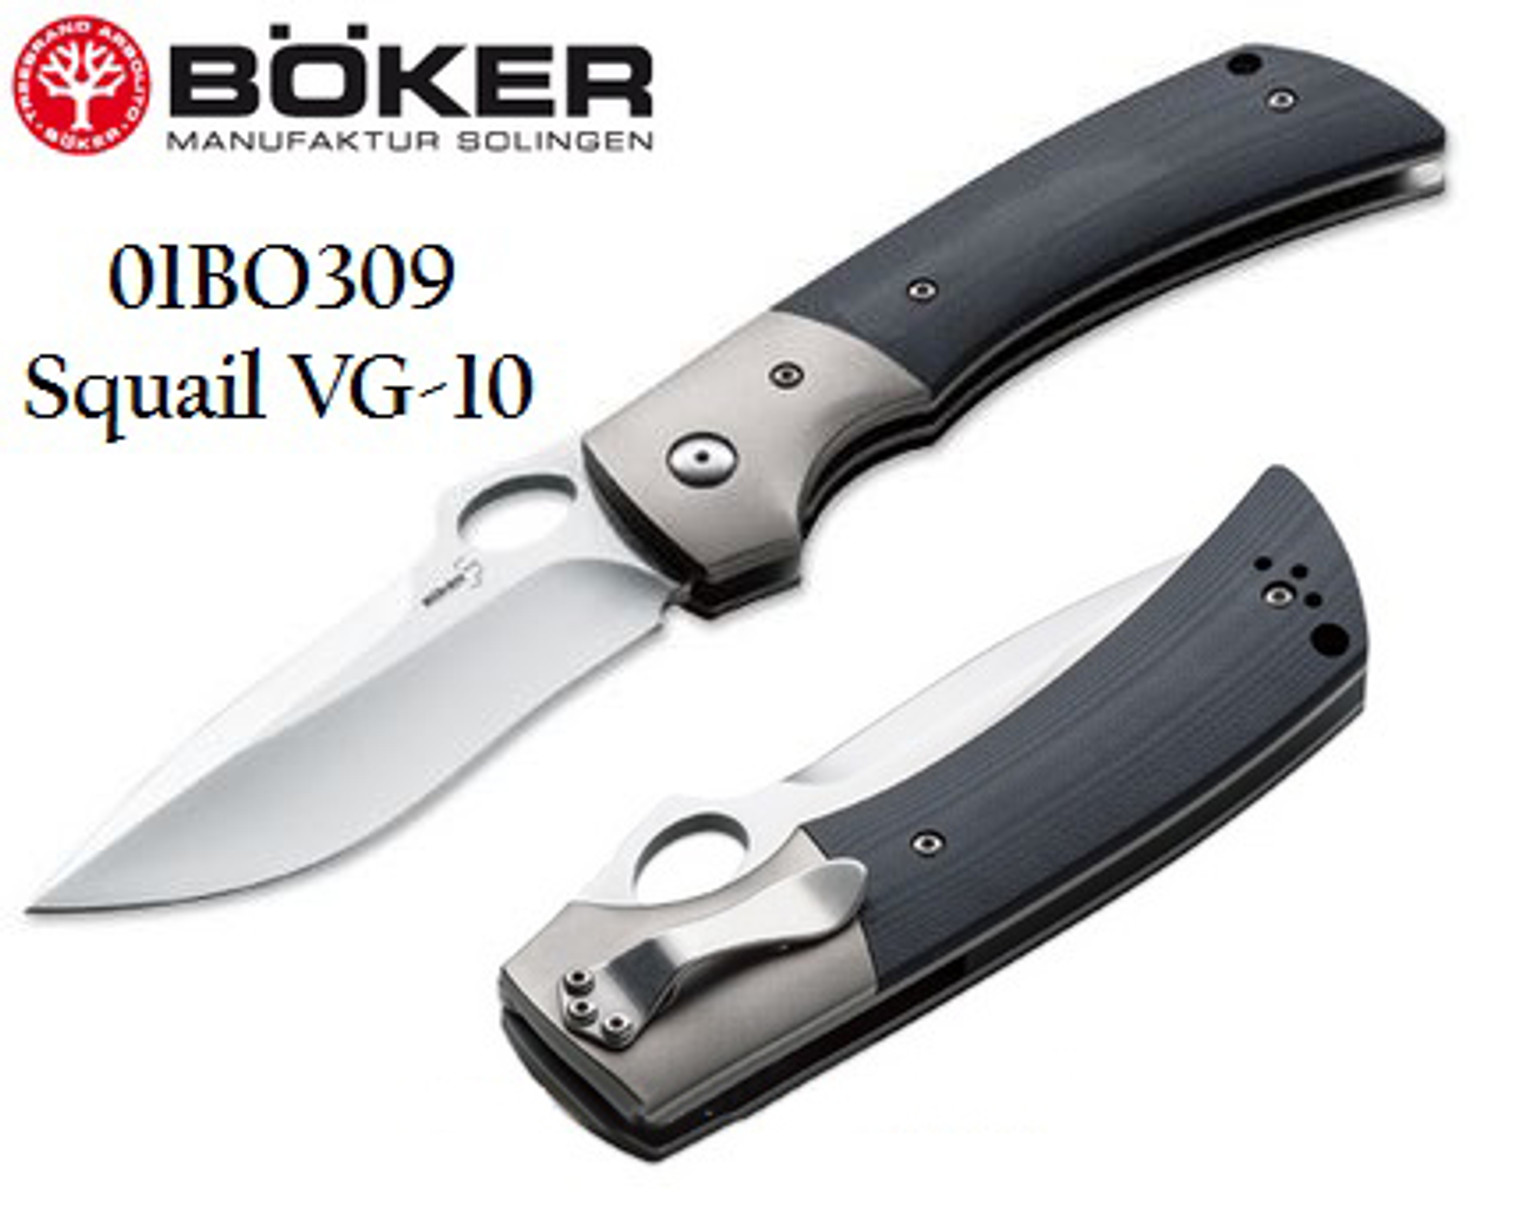 Boker Plus 01BO309 Squail VG-10 Titanium Bolster Folder